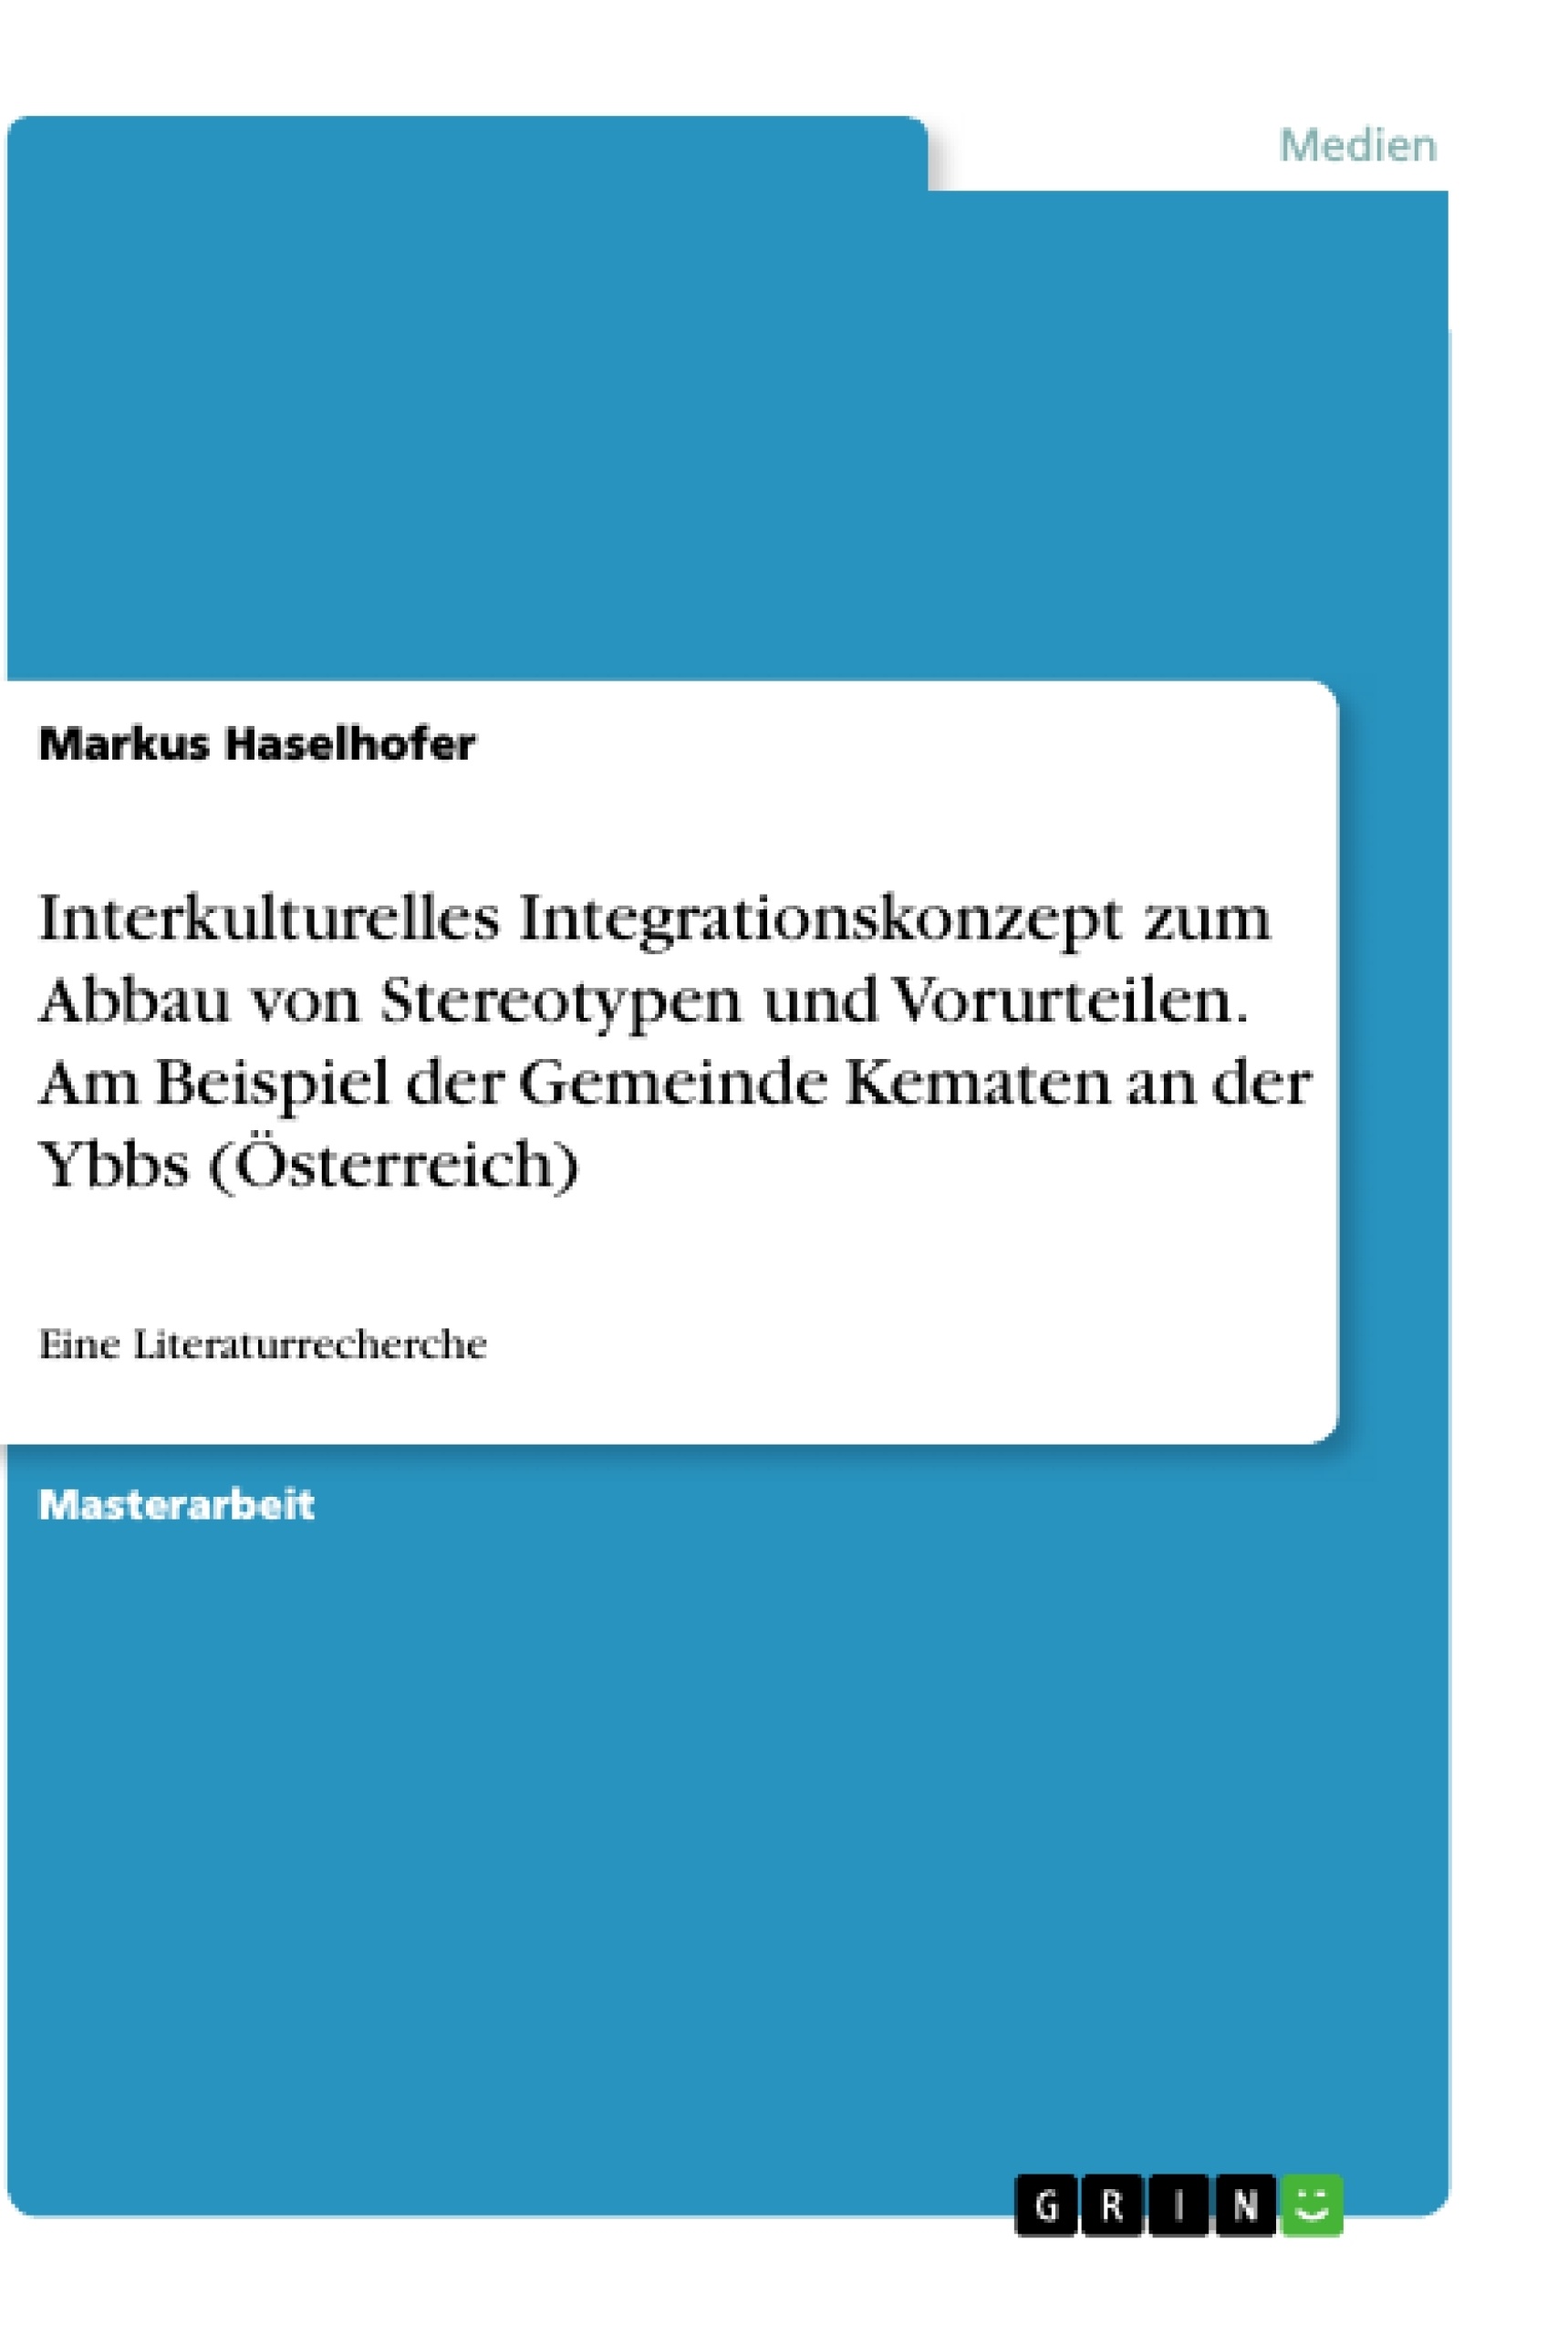 Title: Interkulturelles Integrationskonzept zum Abbau von Stereotypen und Vorurteilen. Am Beispiel der Gemeinde Kematen an der Ybbs (Österreich)